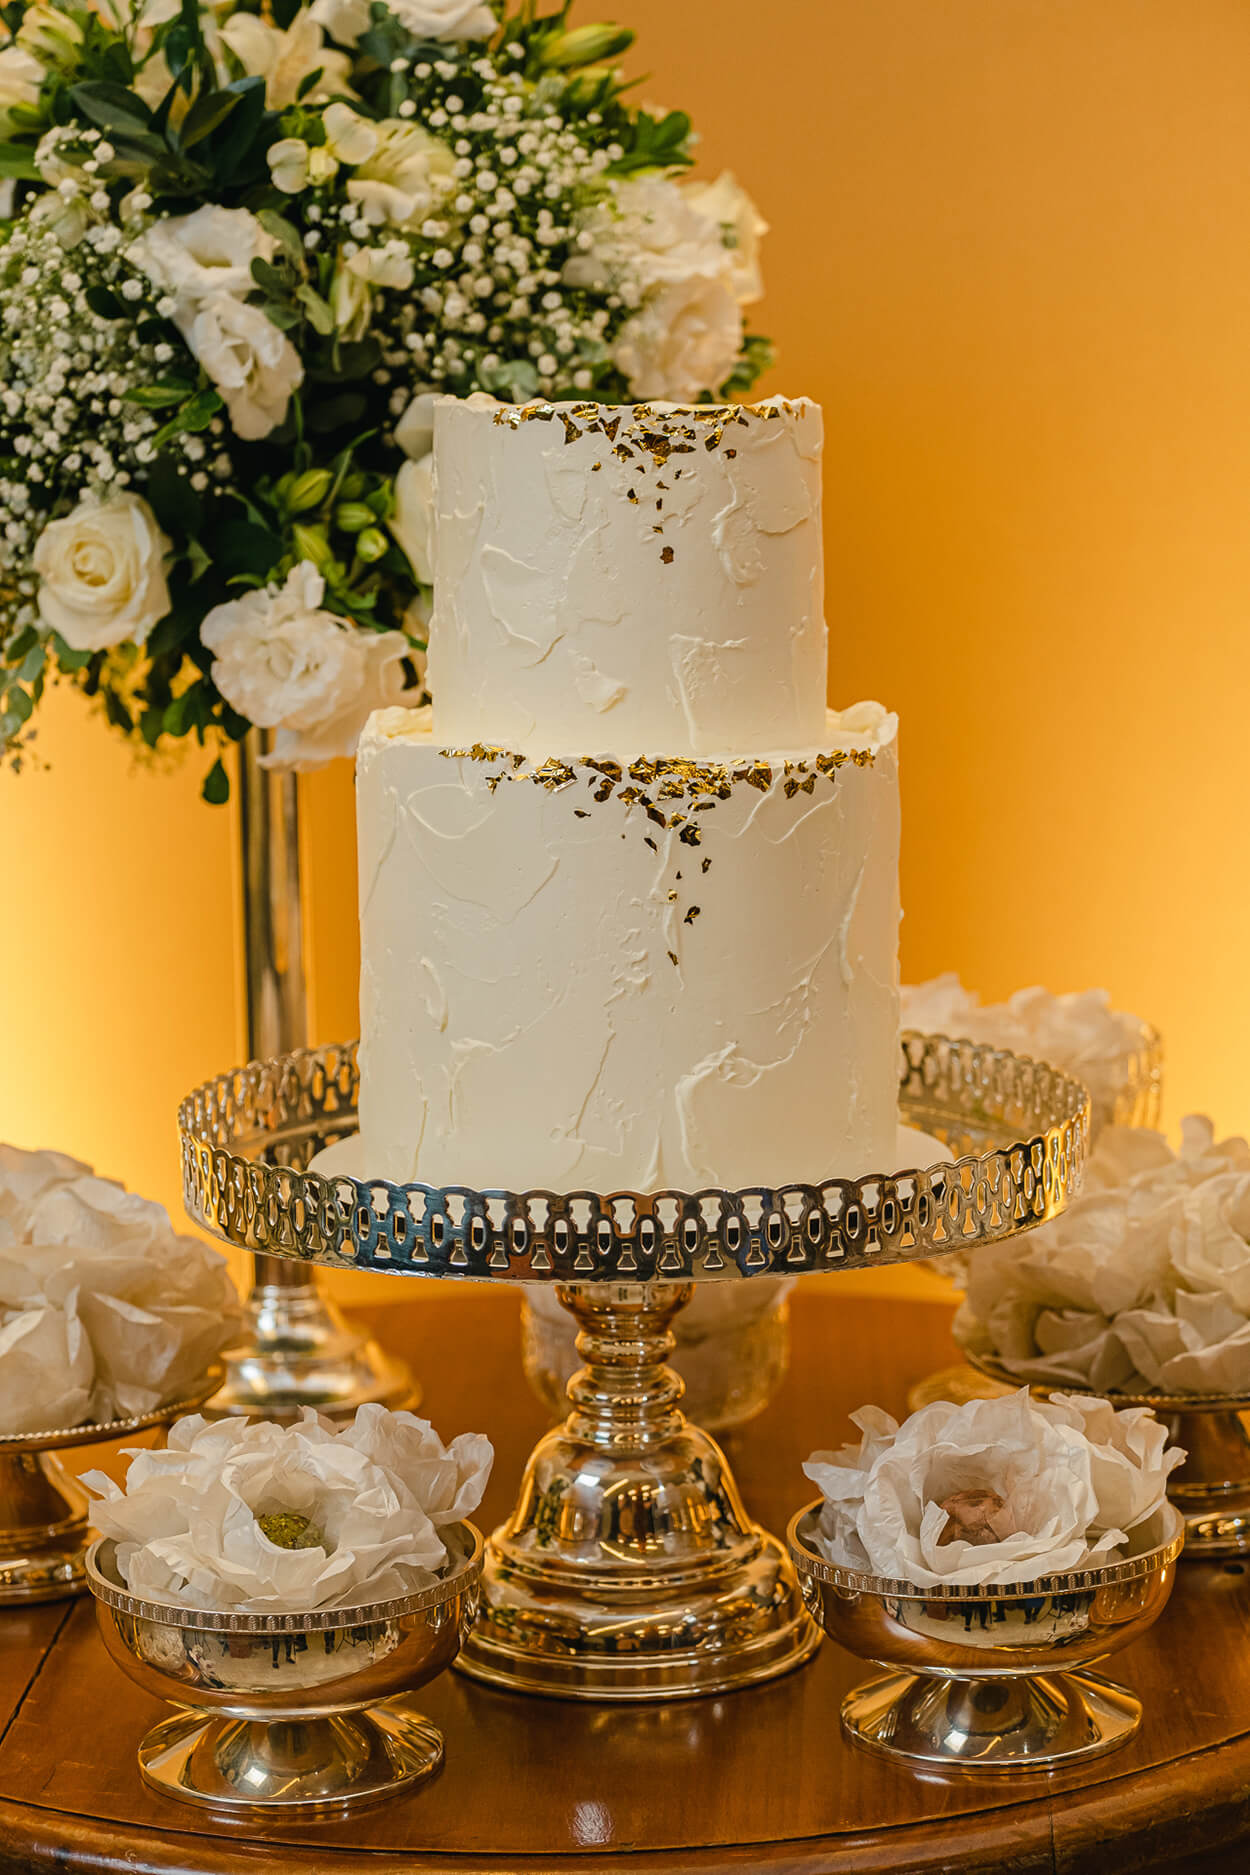 Bolo de casamento branco com dois andares textura irregular e retalhos dourados